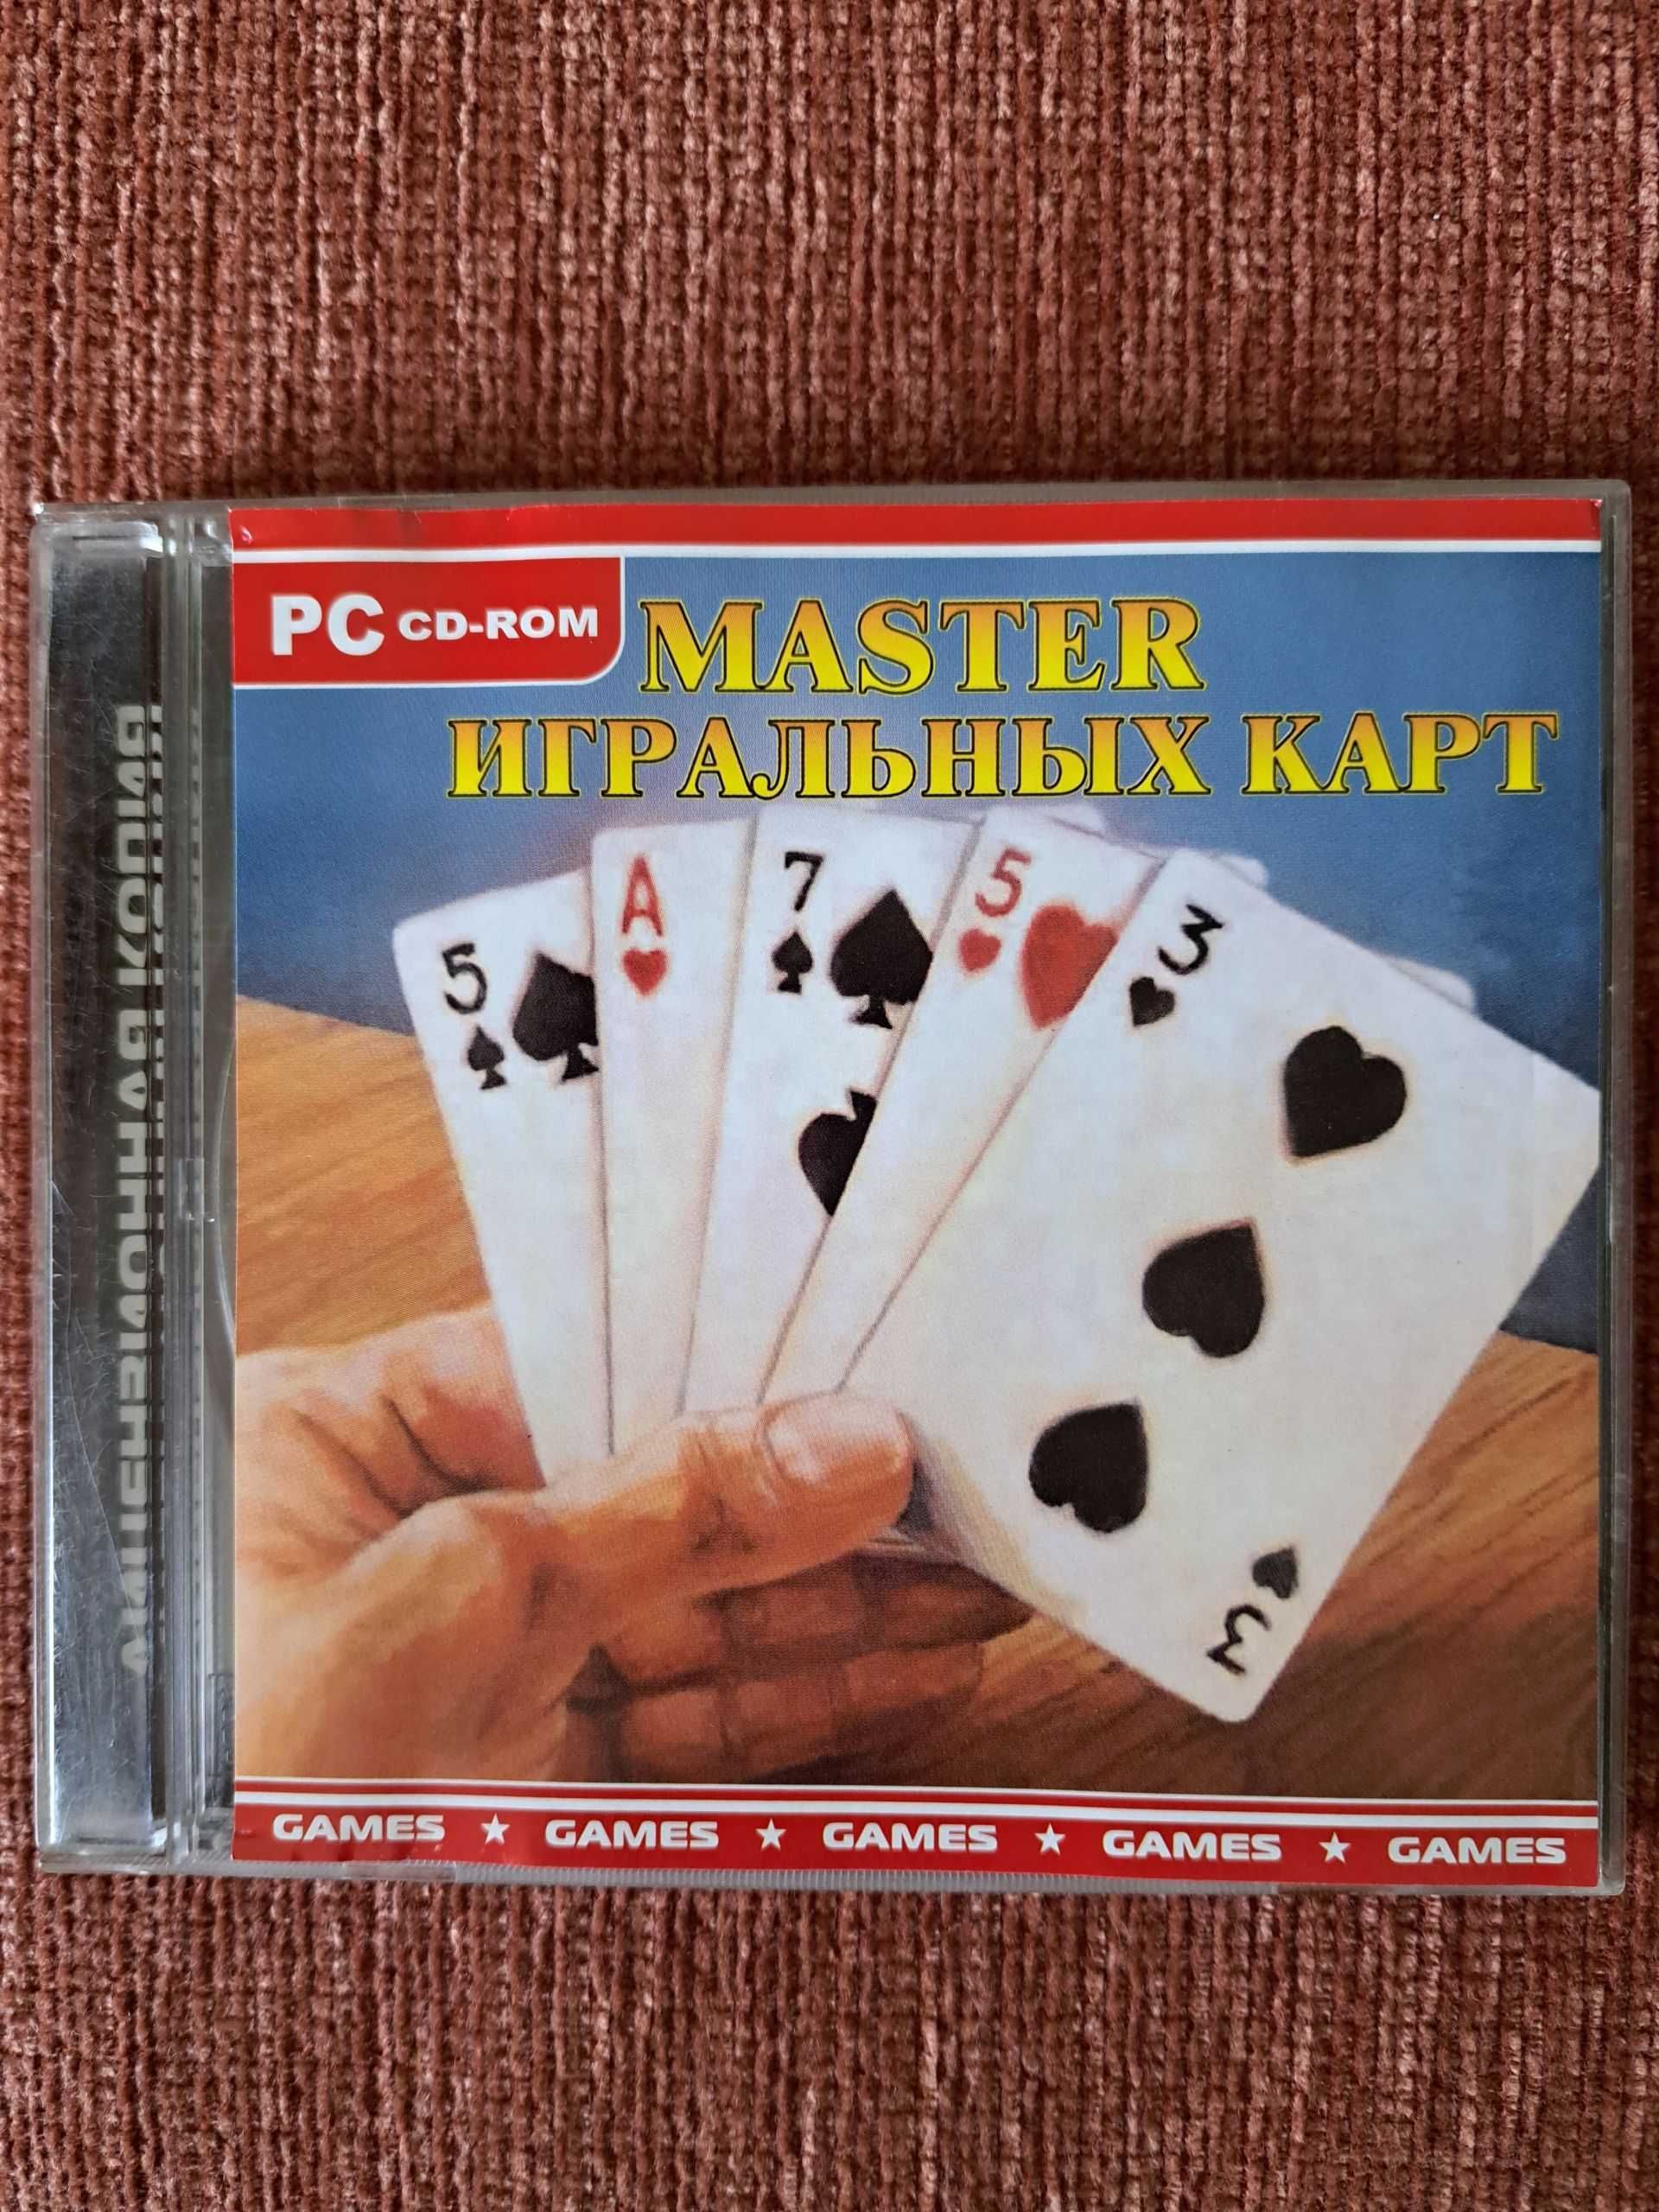 Мастер игральных карт Игры для XP и более ранних версий